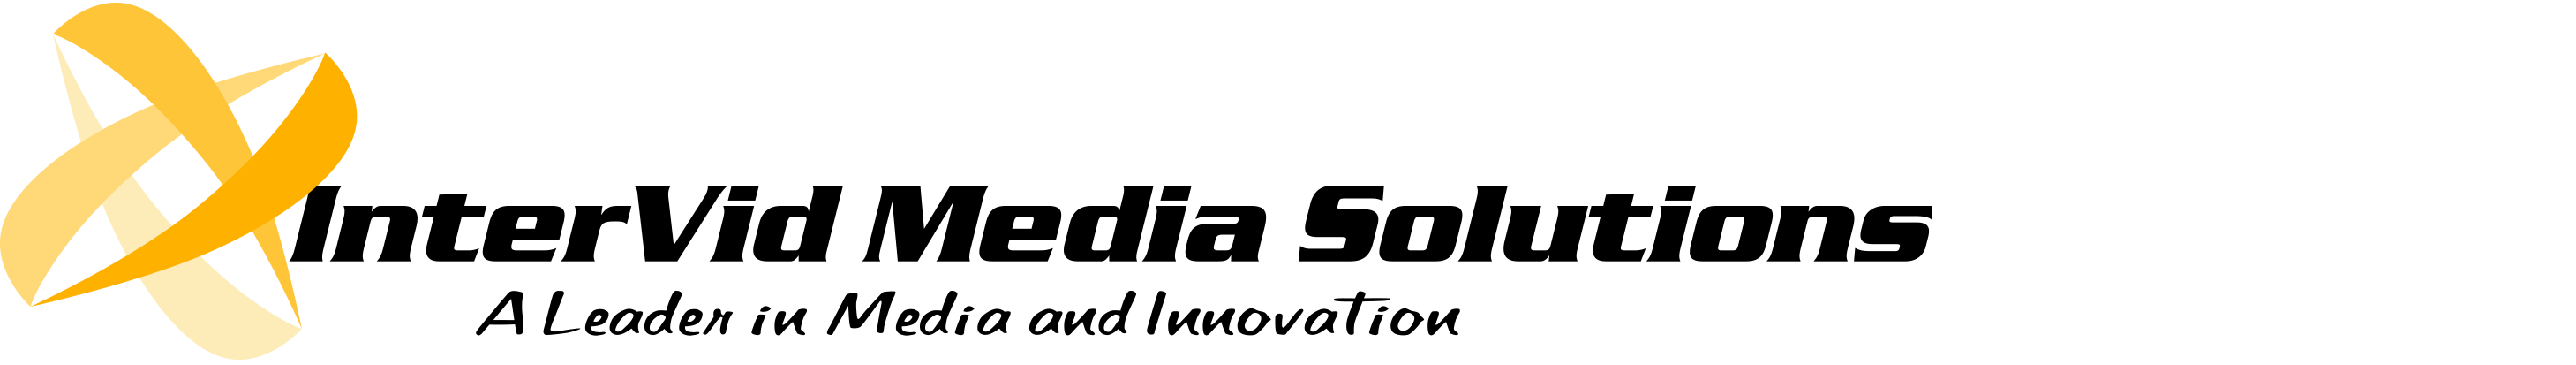 InterVid Media logo